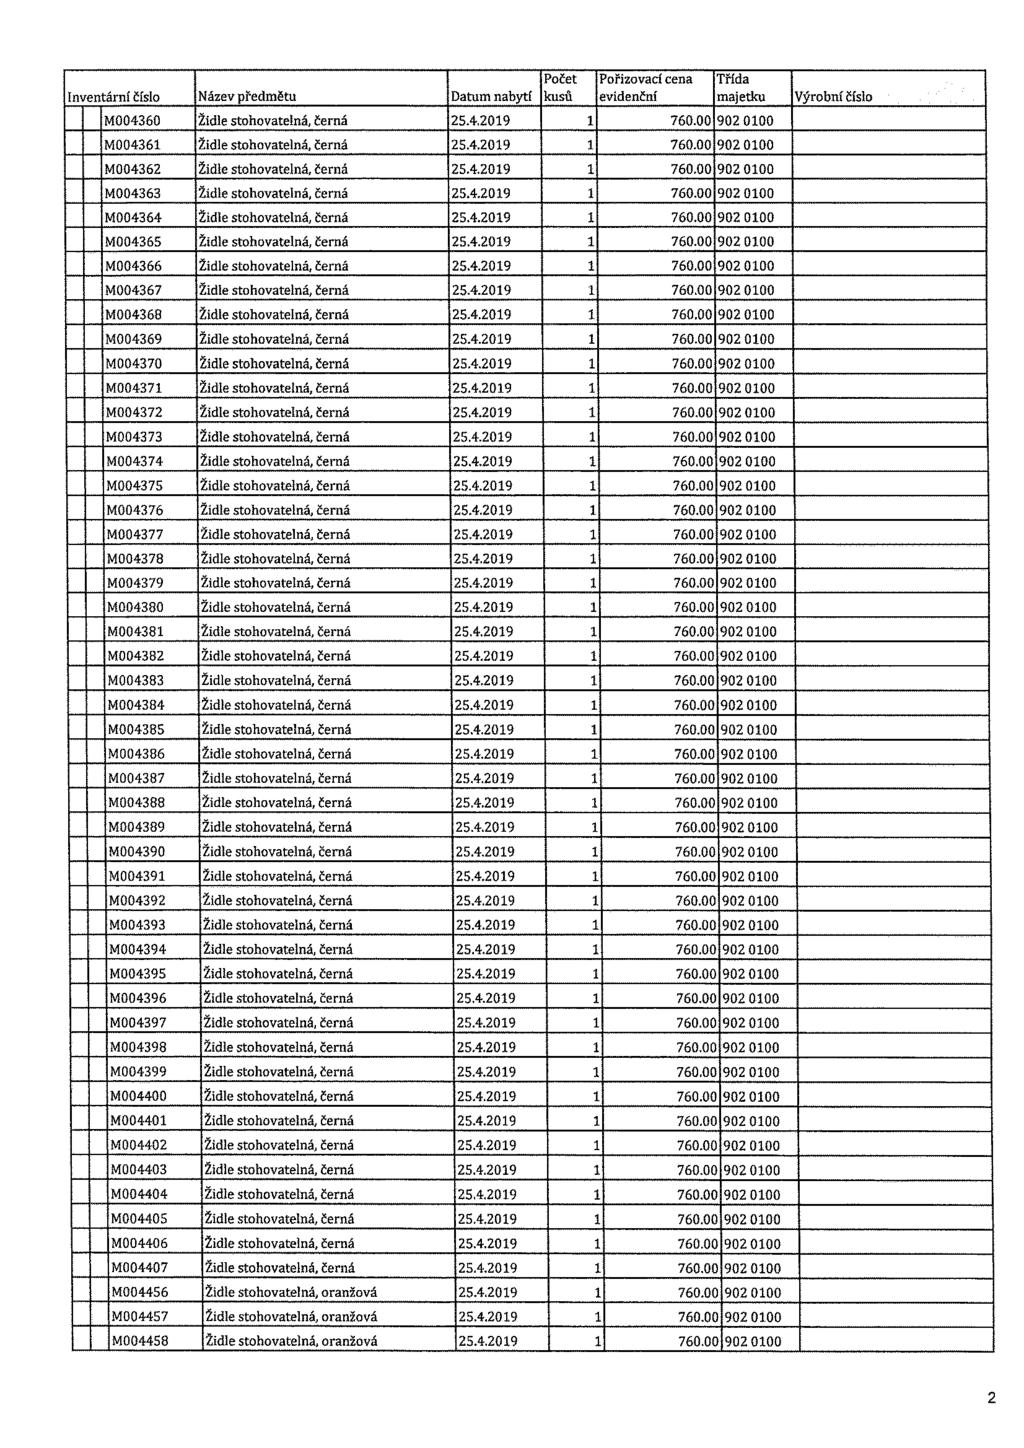 Počet Pořizovací cena Třída Inventární číslo Název předmětu Datum nabytí kusů evidenční majetku Výrobní číslo M004360 Židle stohovatelná, černá 25.4.2019 1 760.